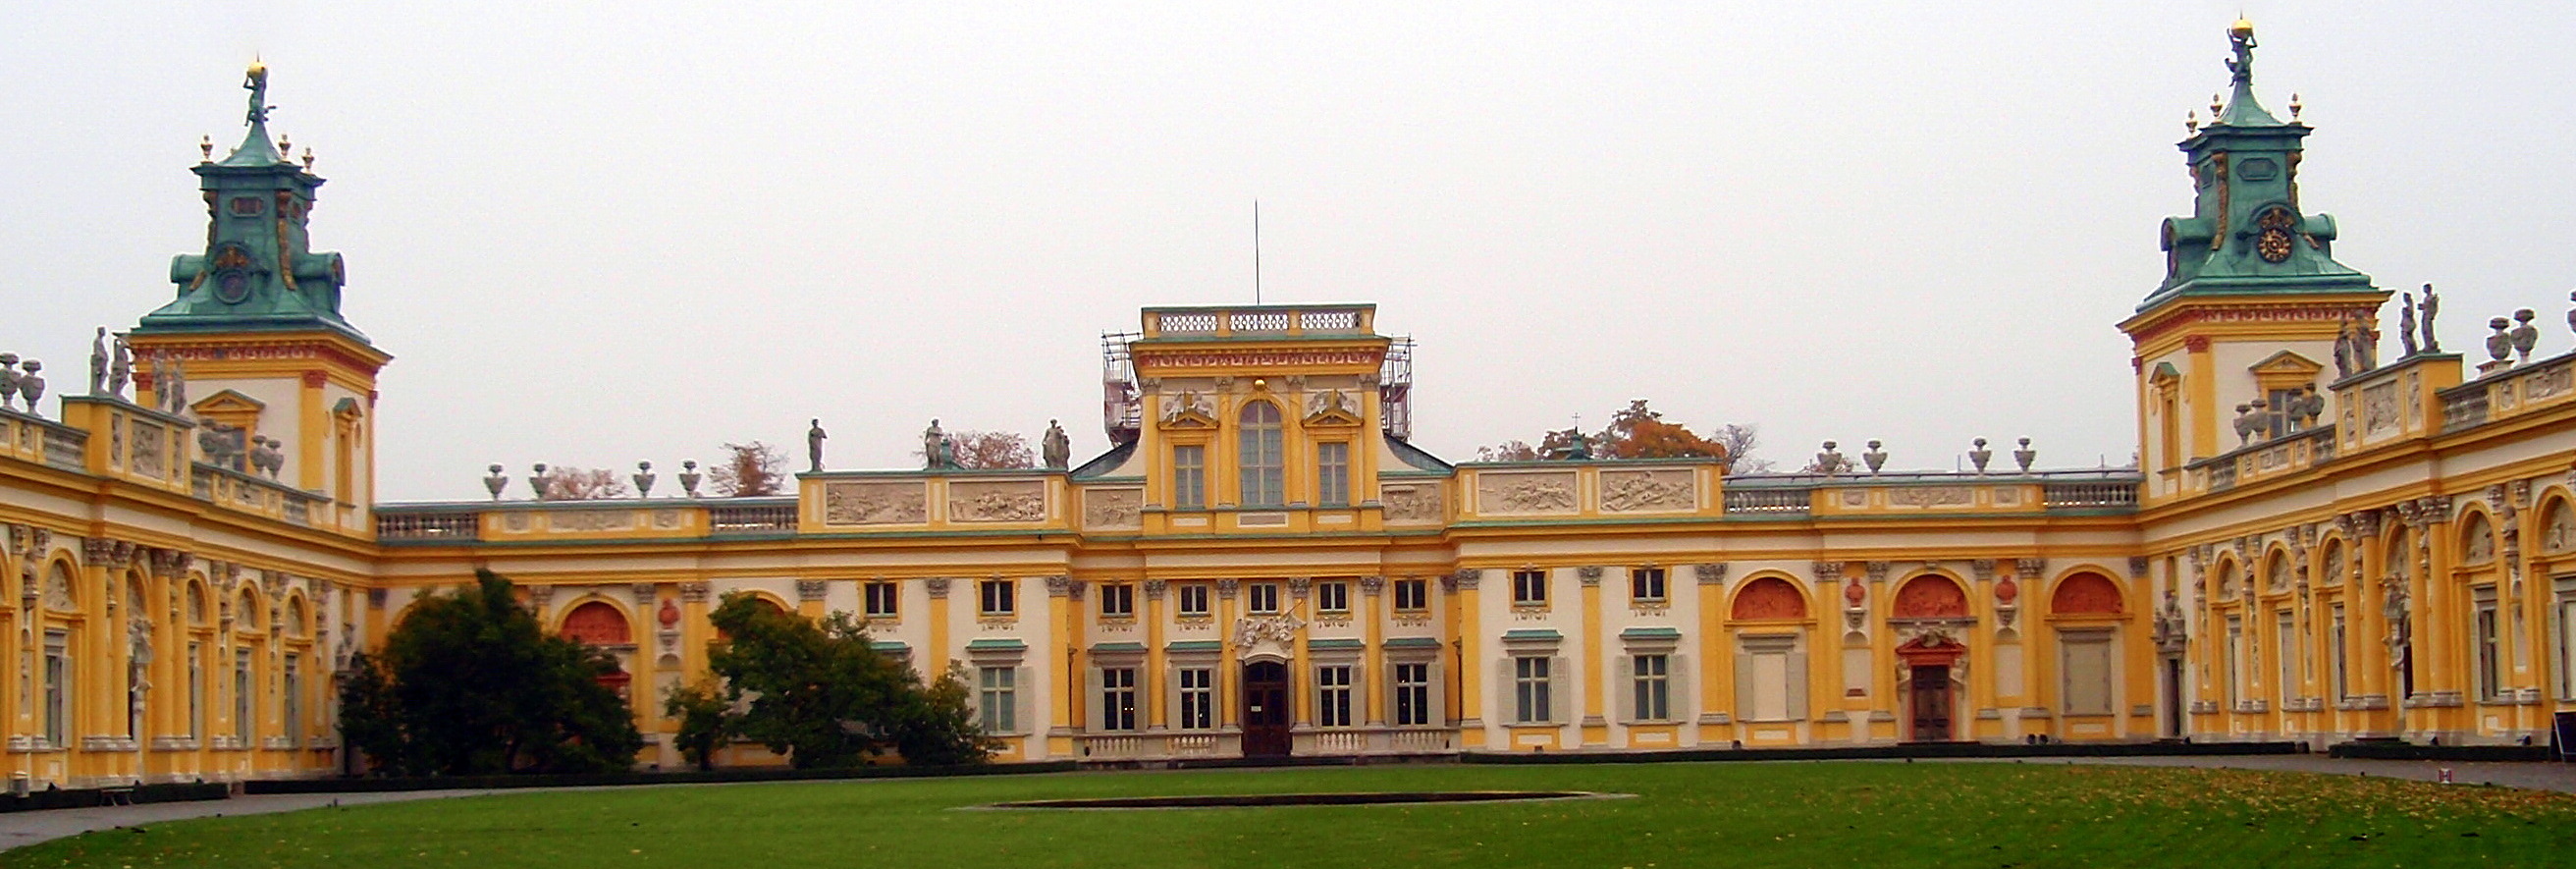 Palácio de Wilanów, Varsóvia III